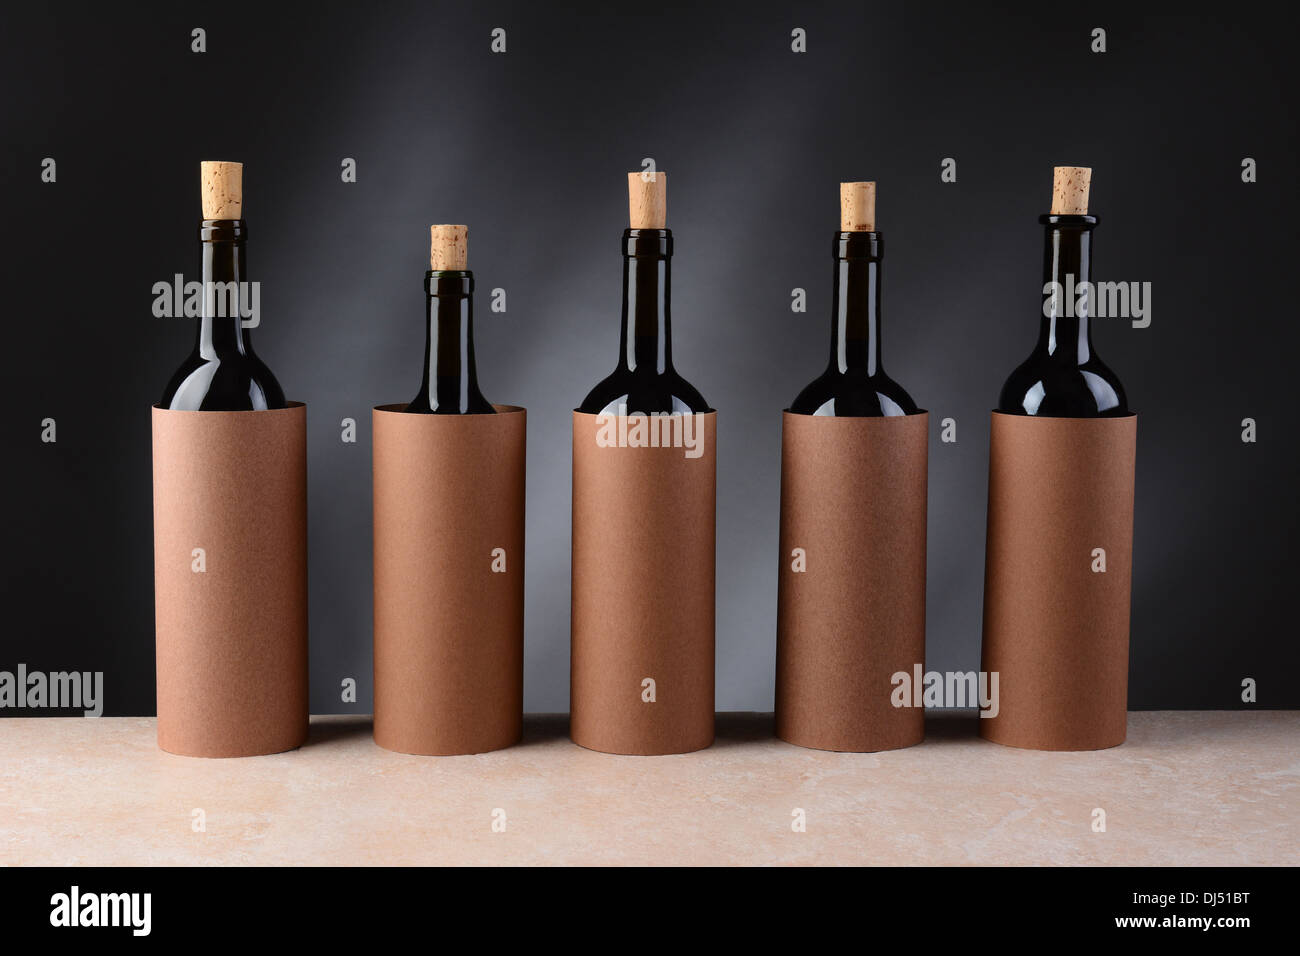 Cinco diferentes botellas de vino configurado para una cata ciega. Los corchos de las botellas han extraído parcialmente Foto de stock